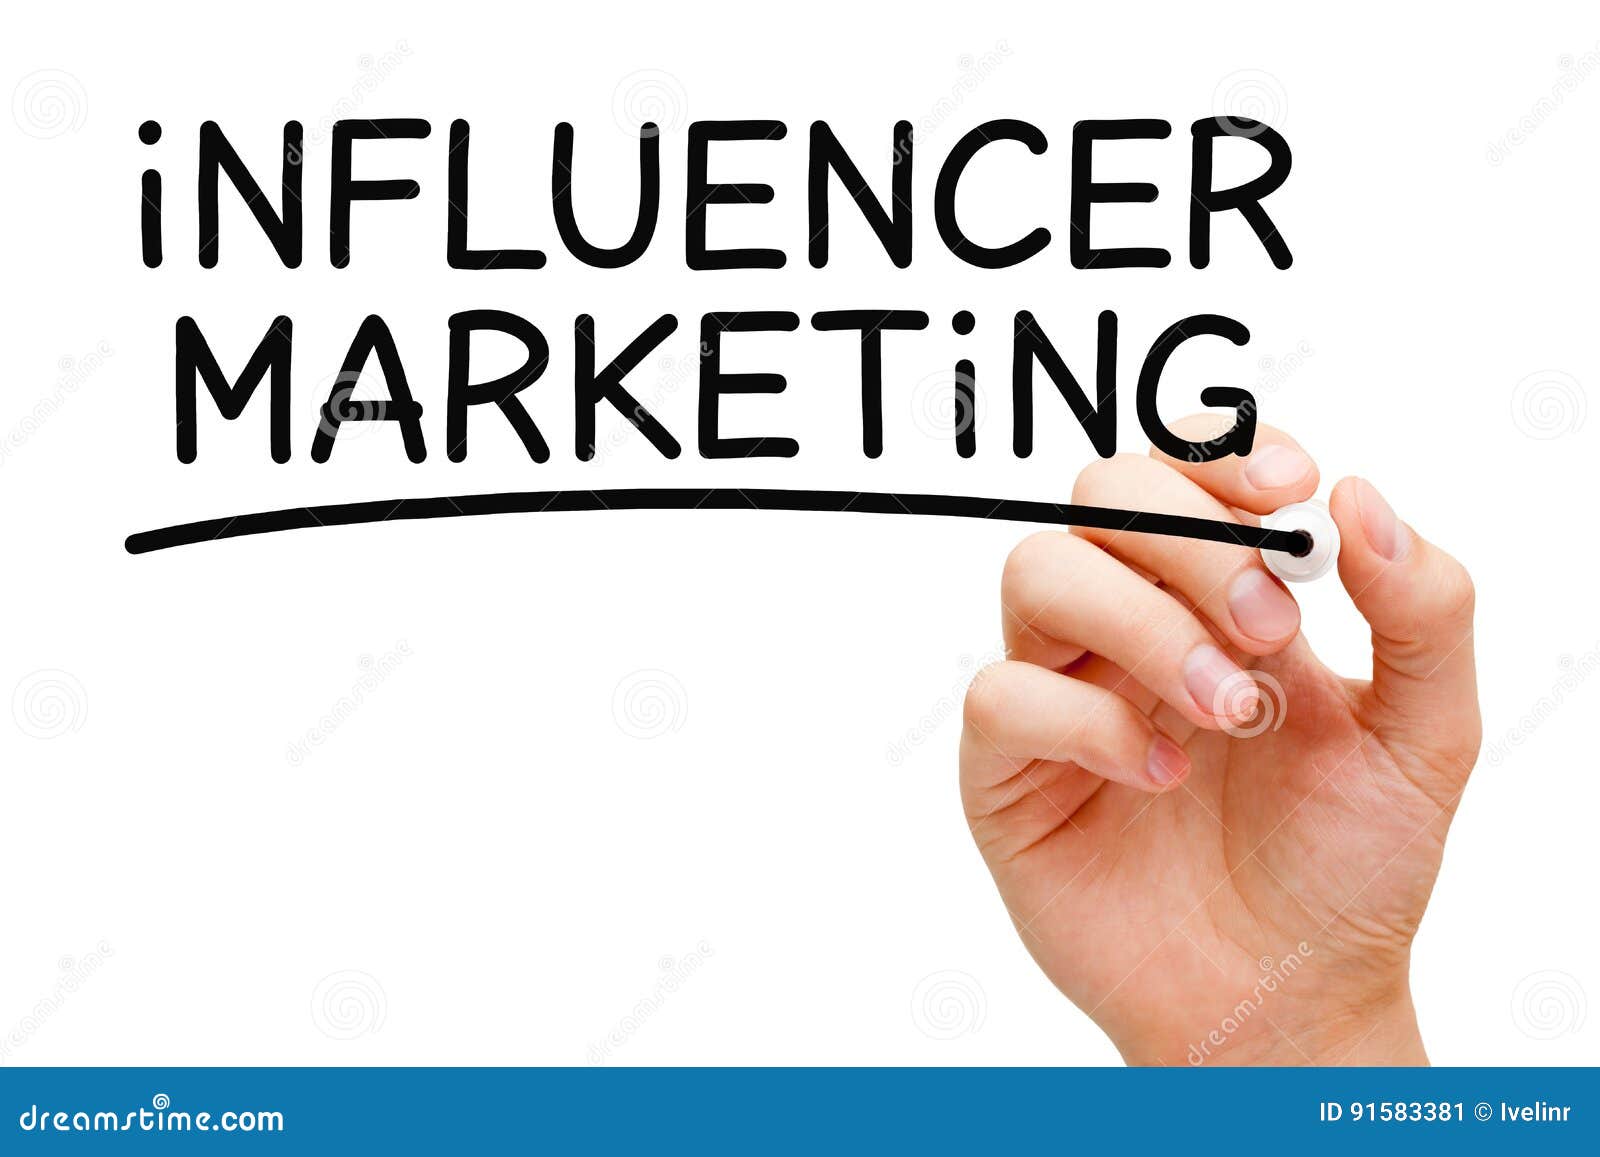 influencer marketing black marker